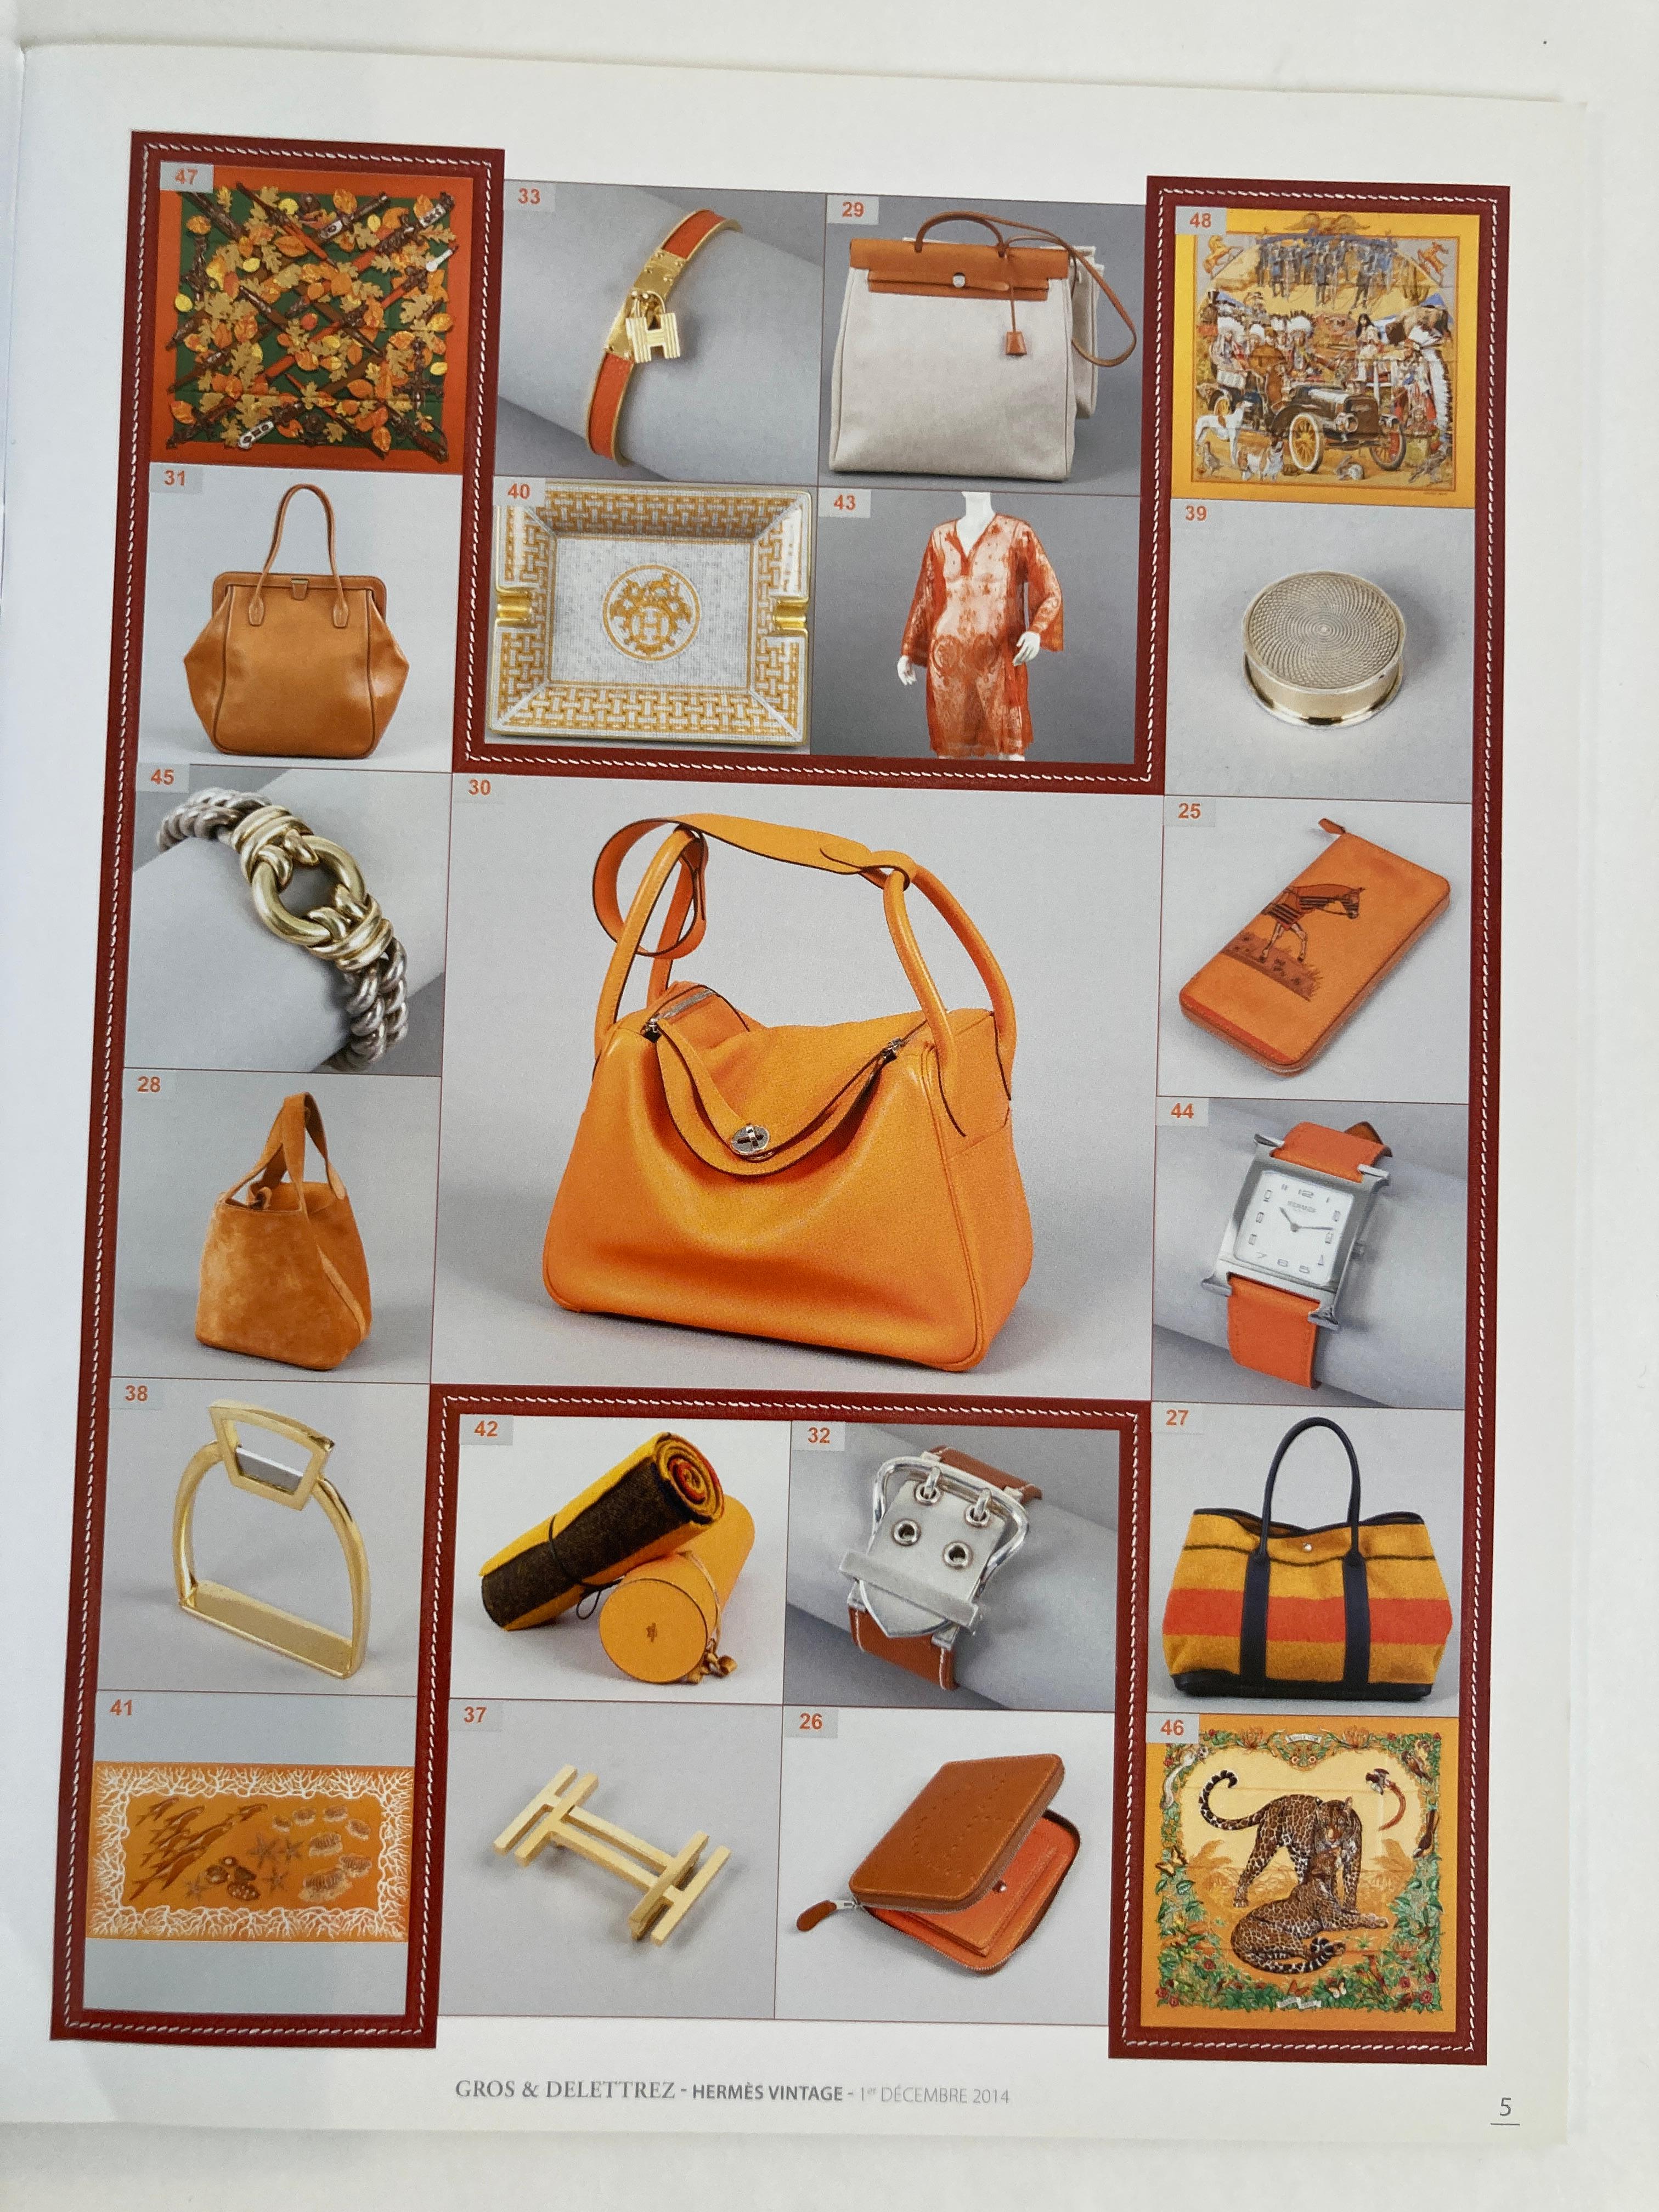 Brown Hermes Vintage Paris Auction Catalog 2014 Published by Gros & Delettrez For Sale